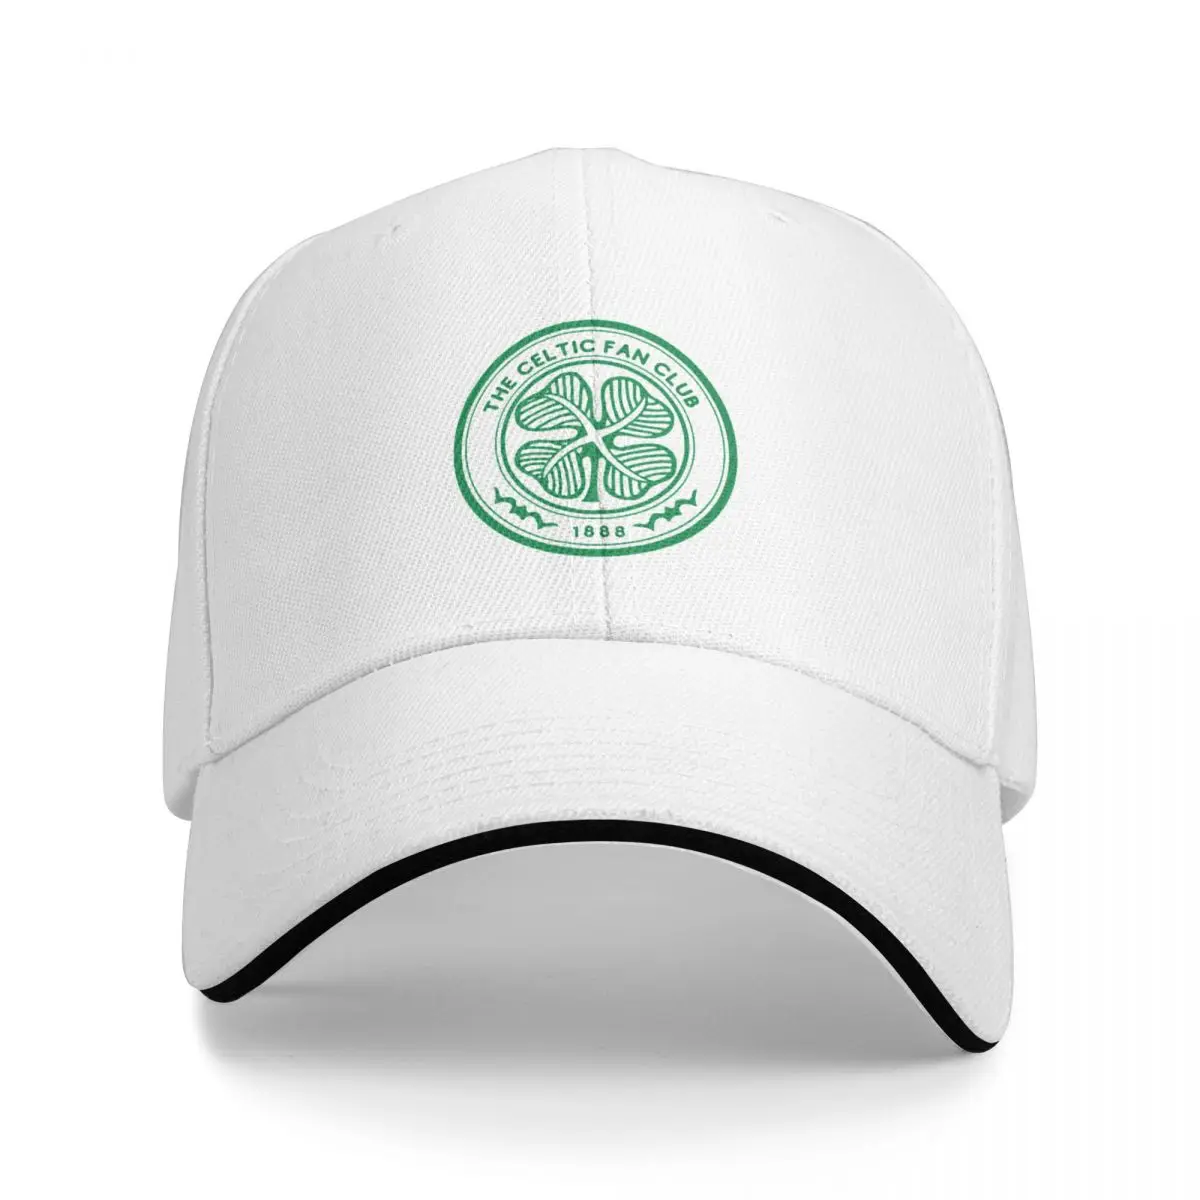 

Celtic Fc Fan Club Logo Since 1888 - RetroCap Baseball Cap Golf wear hats for women Men's 1